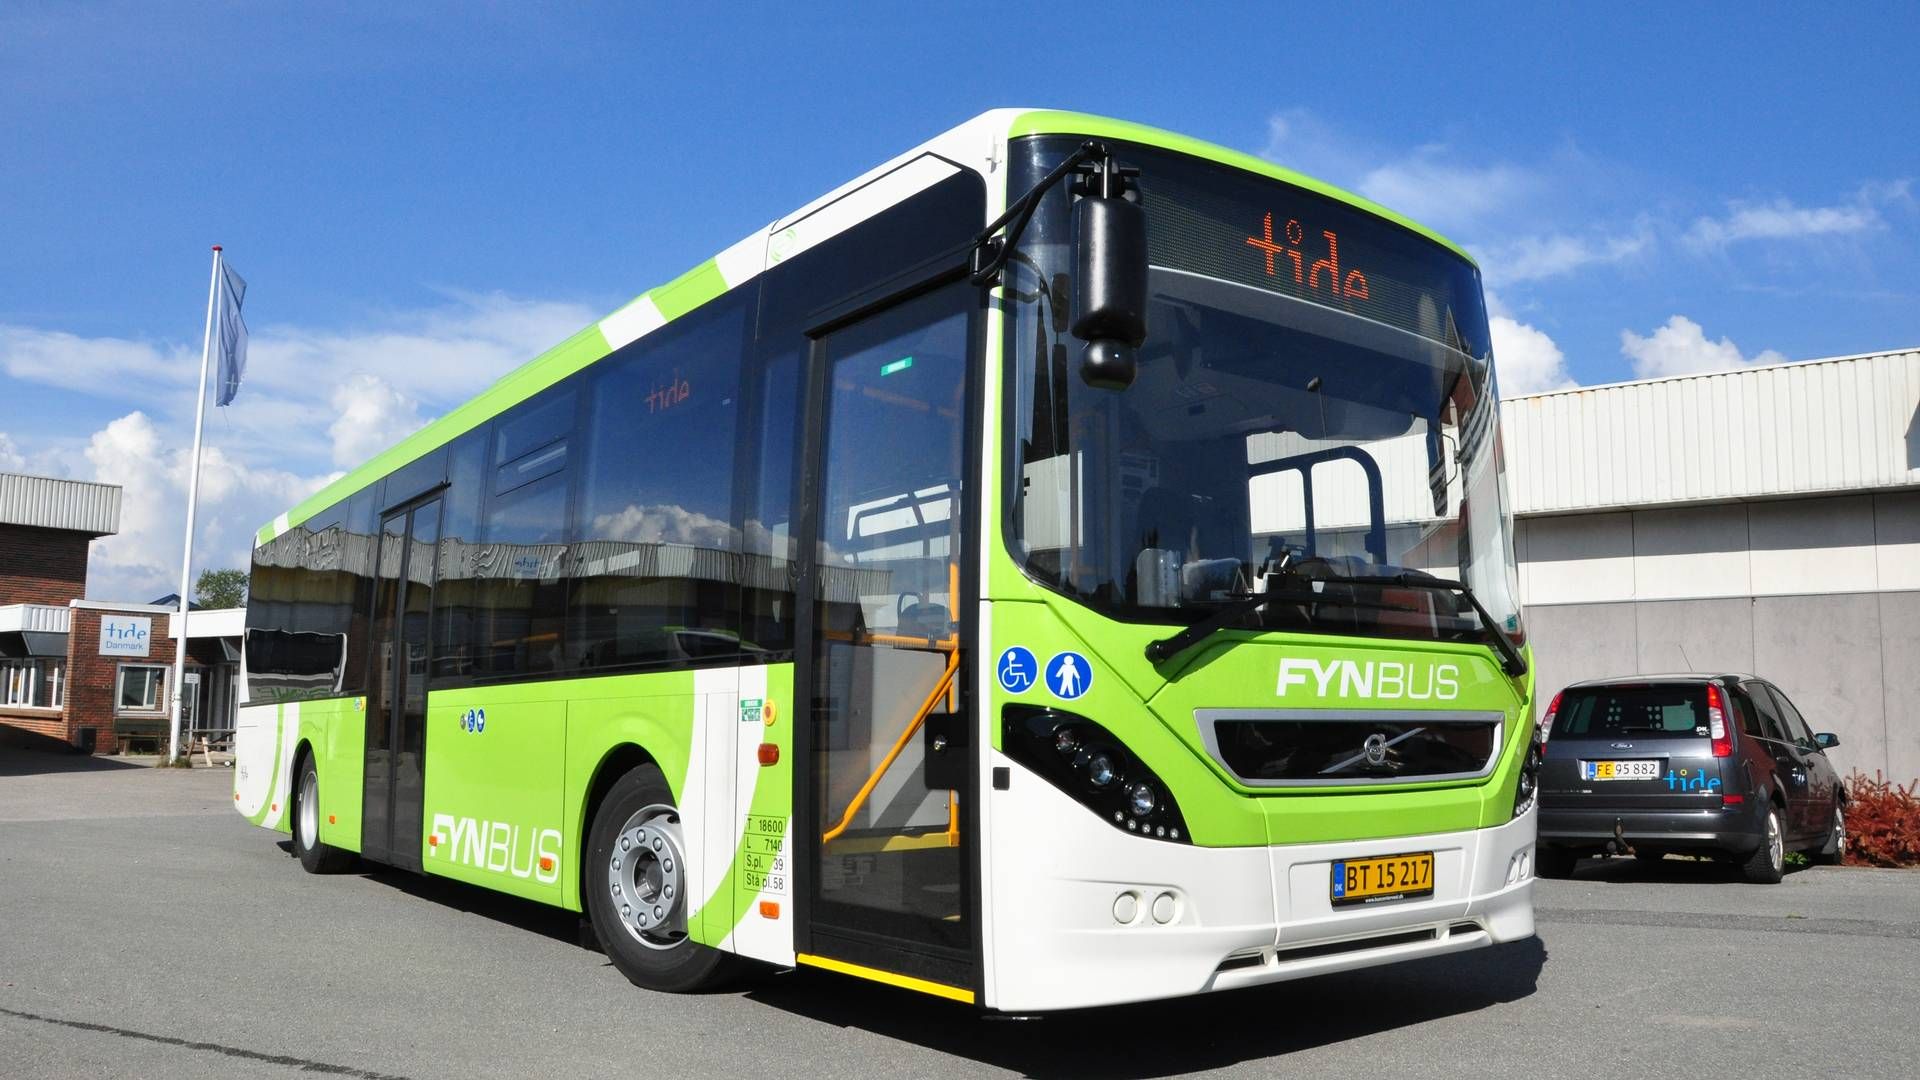 Prisen på grønne busser har vist sig at være væsentlig højere, end Fynbus' ejerkommuner har budgetteret med. | Foto: Fynbus/pr